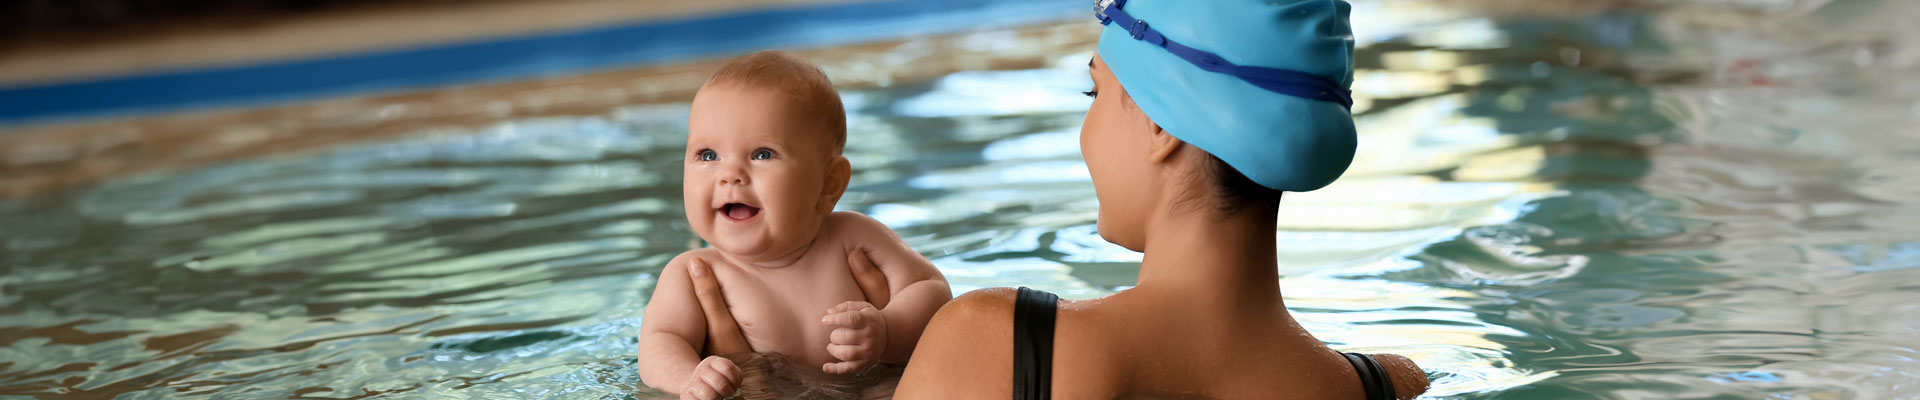 La mamá con su bebé realizando una práctica libre de natación.